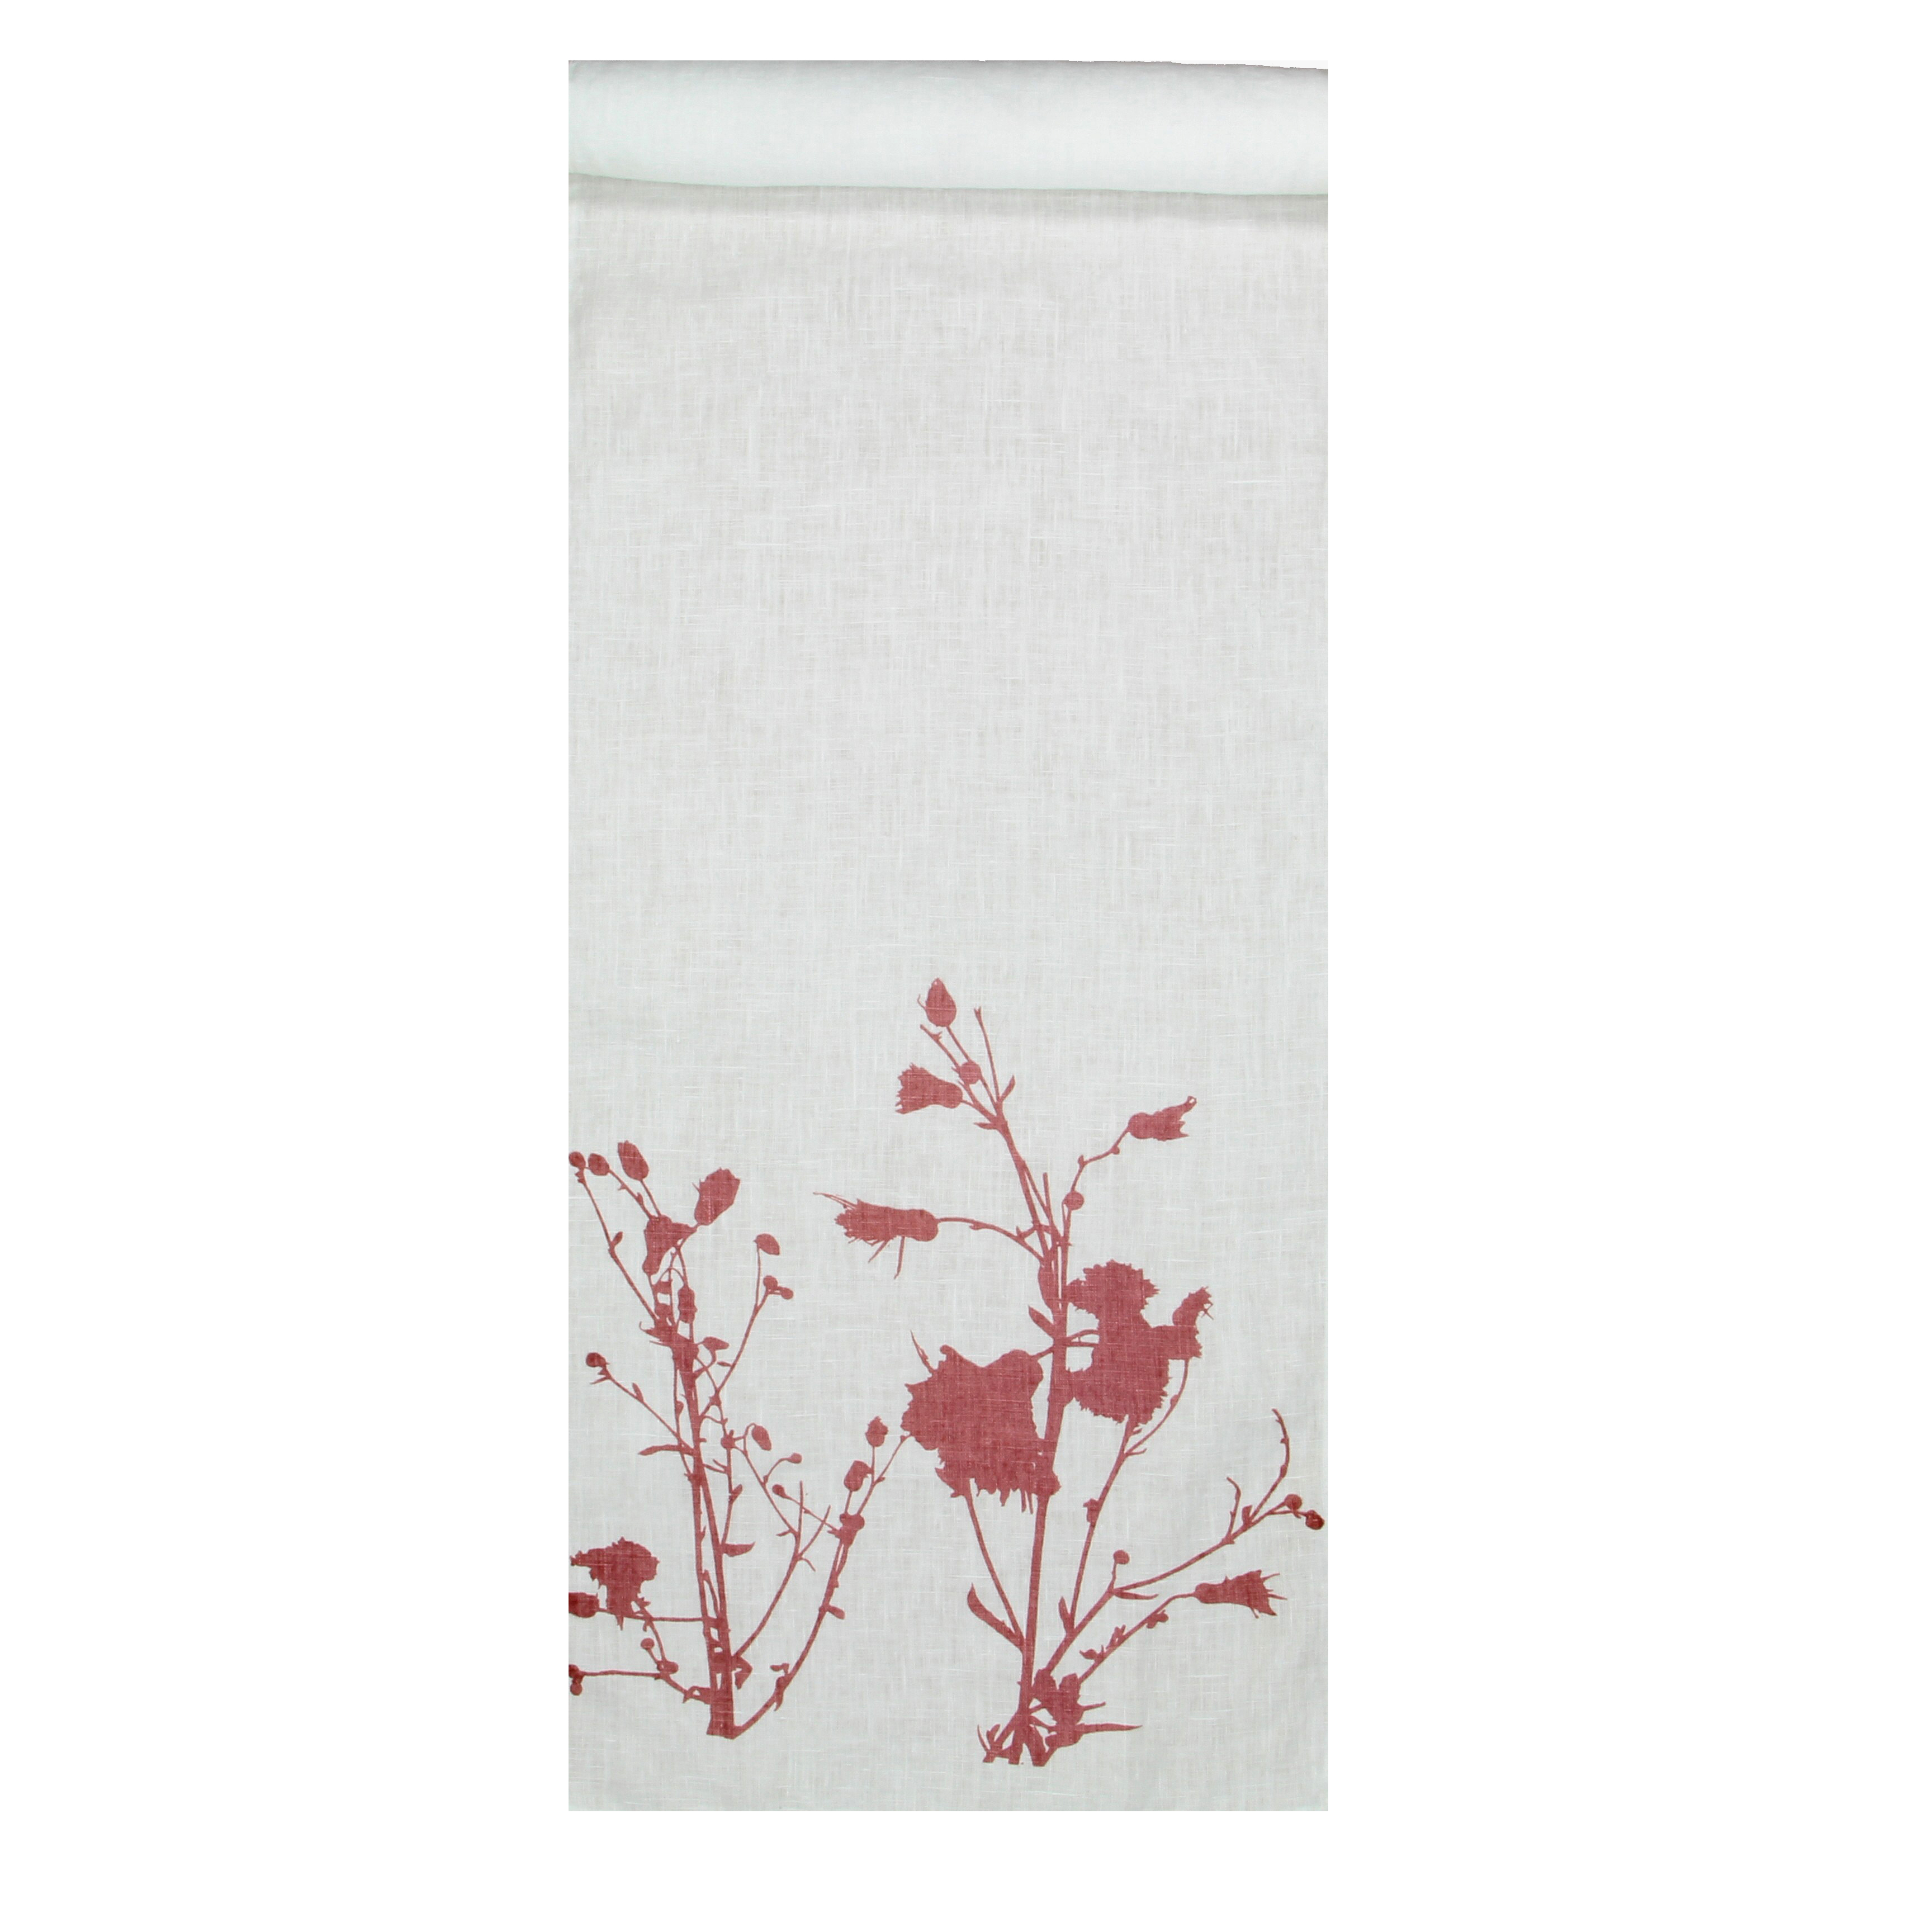 Dorothee Lehnen Tischläufer  Leinen Wiesenblume 2, weiß, ca. 40 x 150 cm  